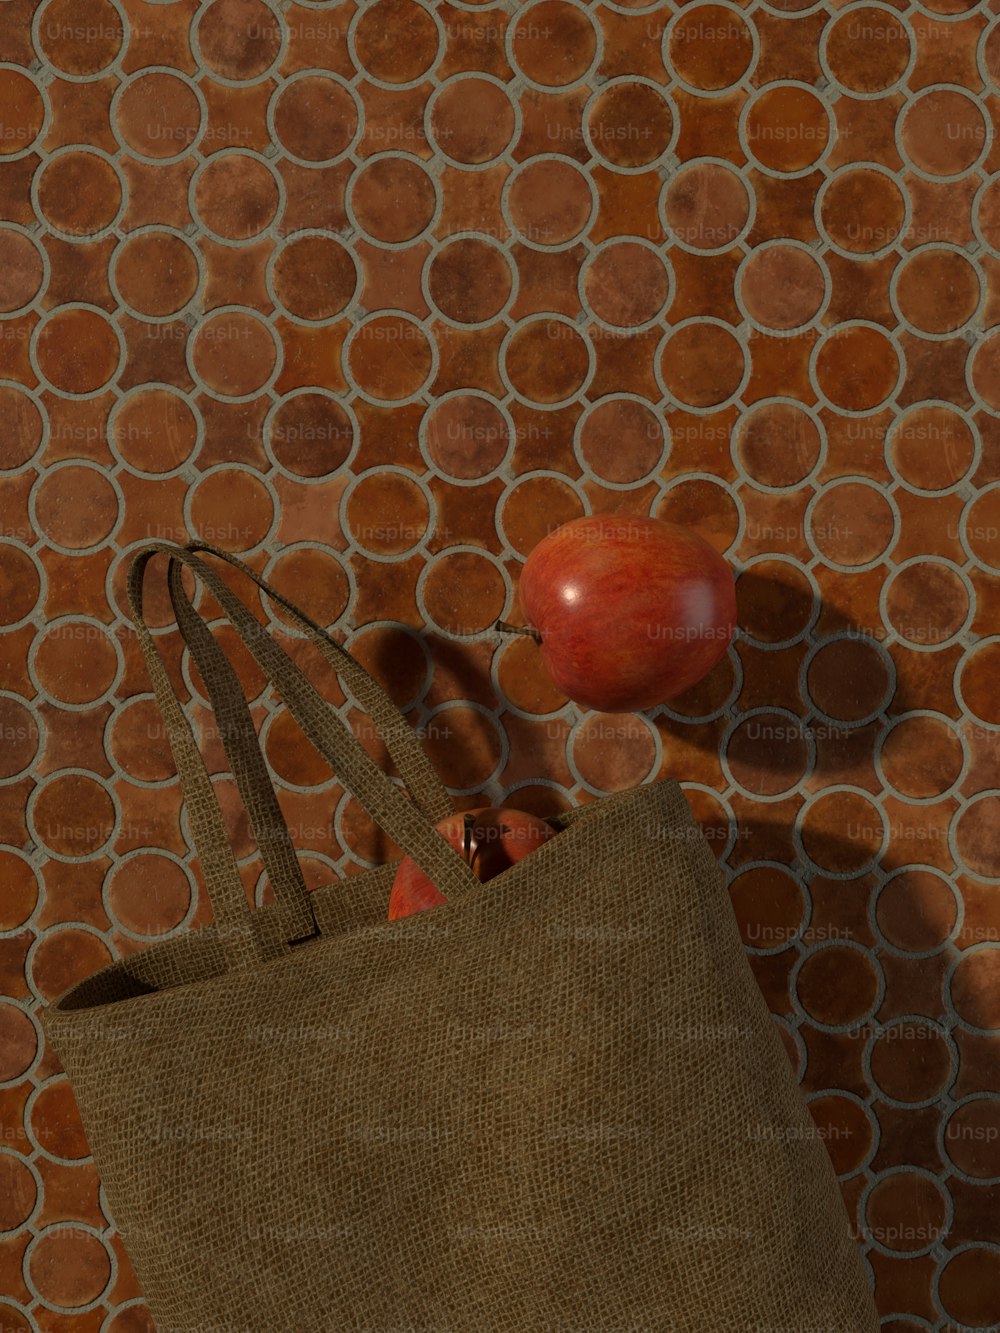 赤いリンゴが乗った茶色の袋